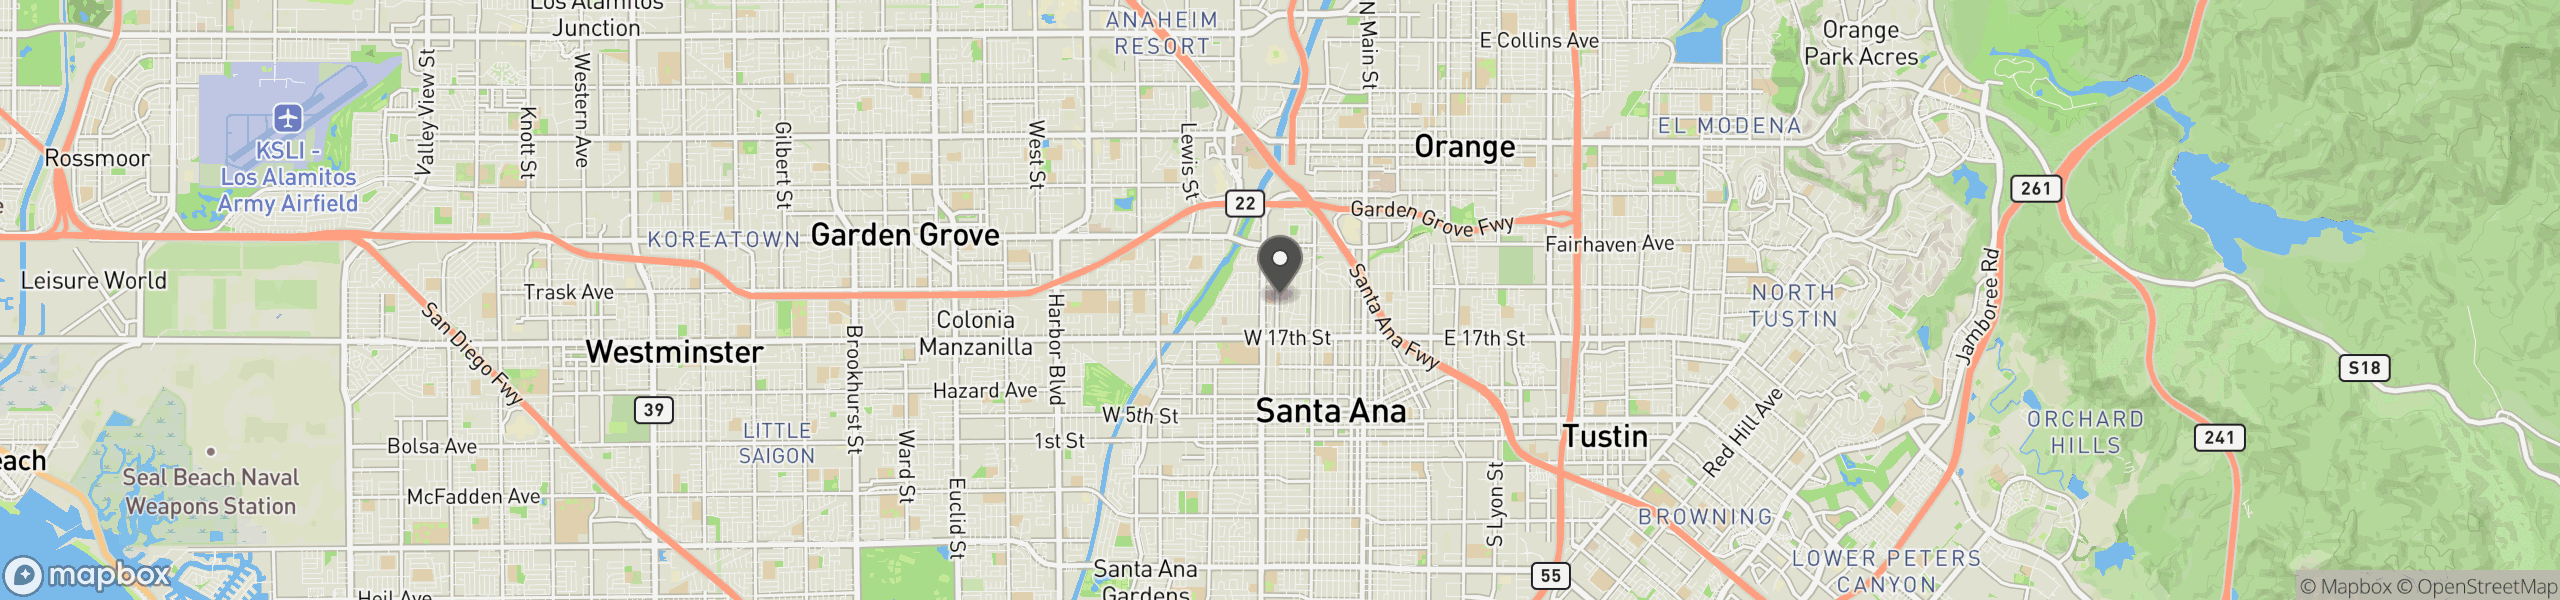 Santa Ana, CA 92706